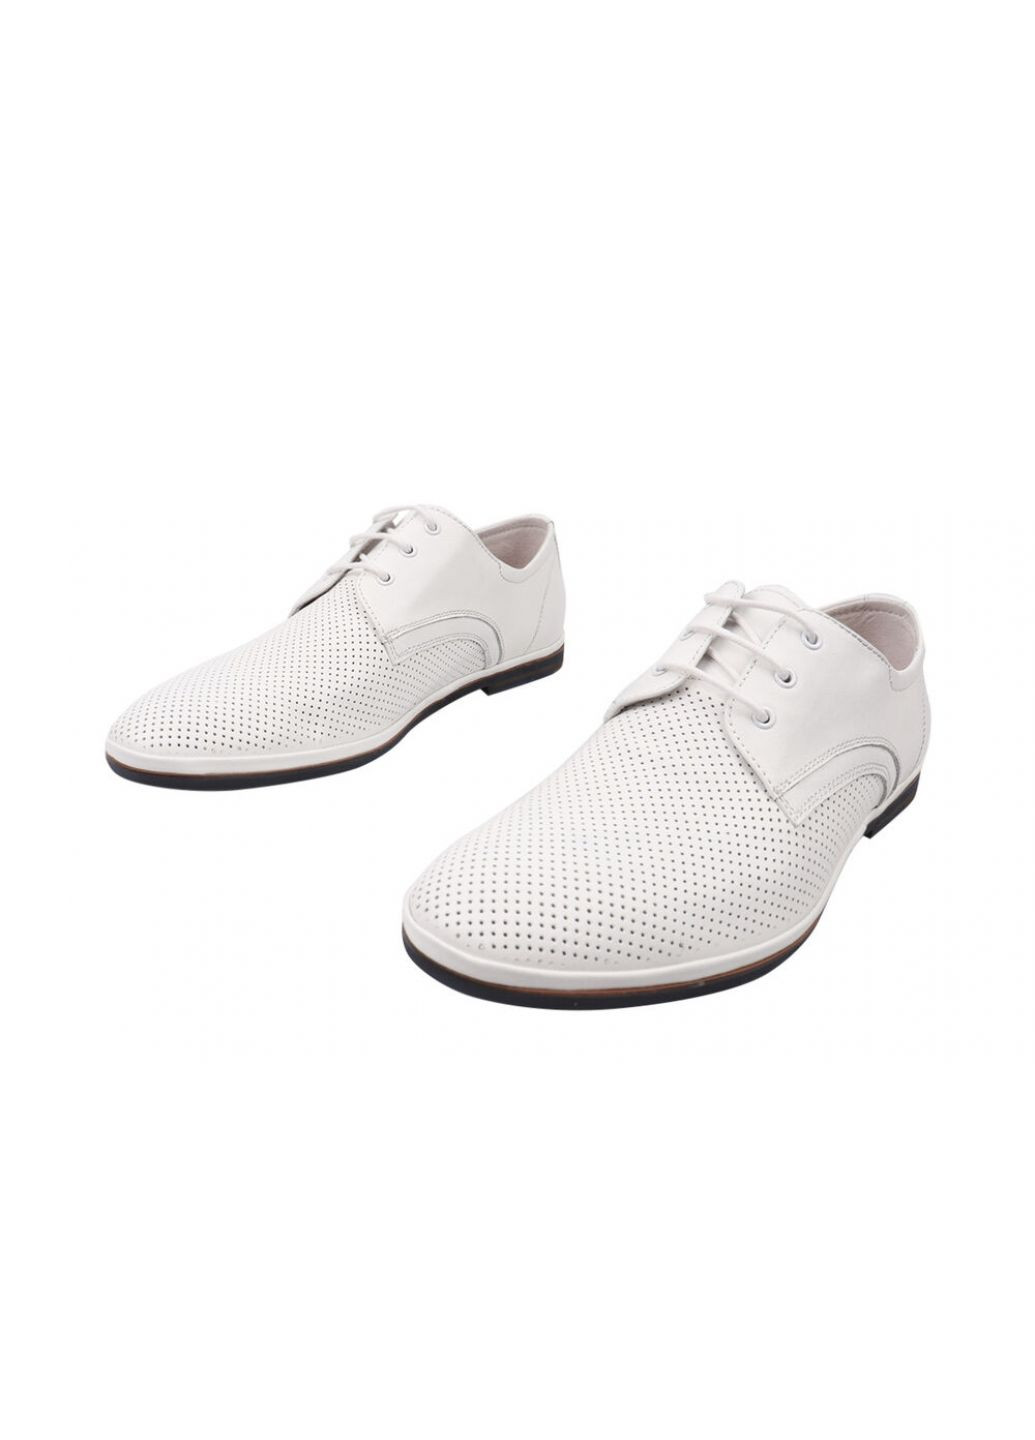 Белые туфли мужские из натуральной кожи, на низком ходу, на шнуровке, цвет белый, Emillio Landini